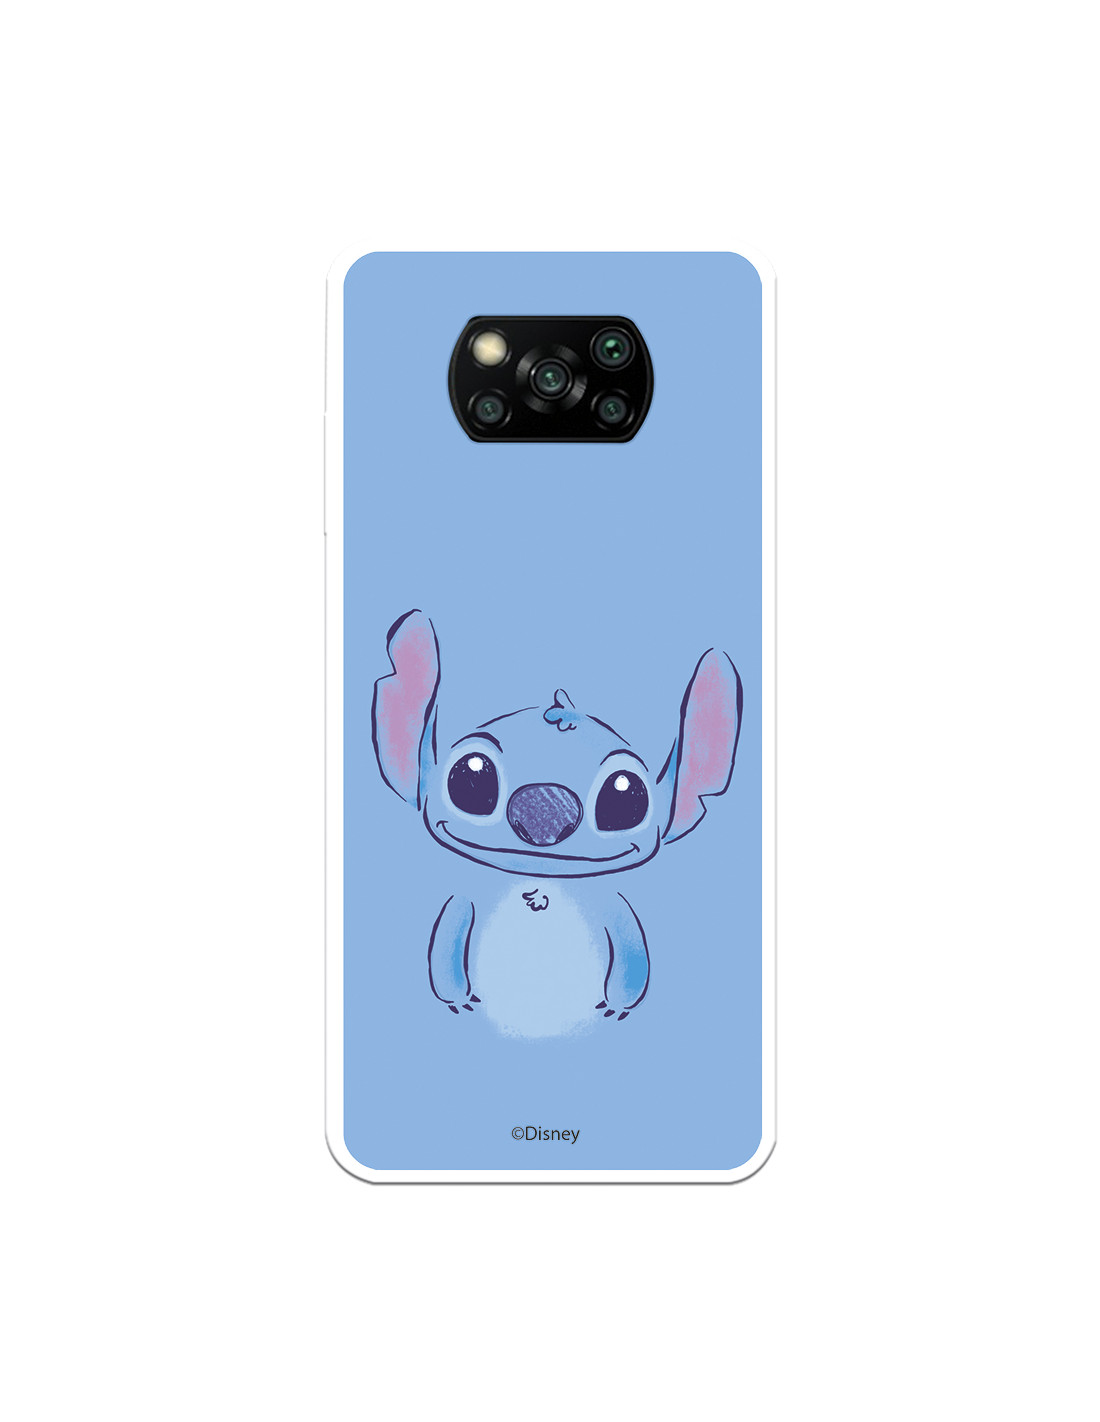 Funda para Xiaomi Redmi 9 Oficial de Disney Stitch Azul - Lilo & Stitch